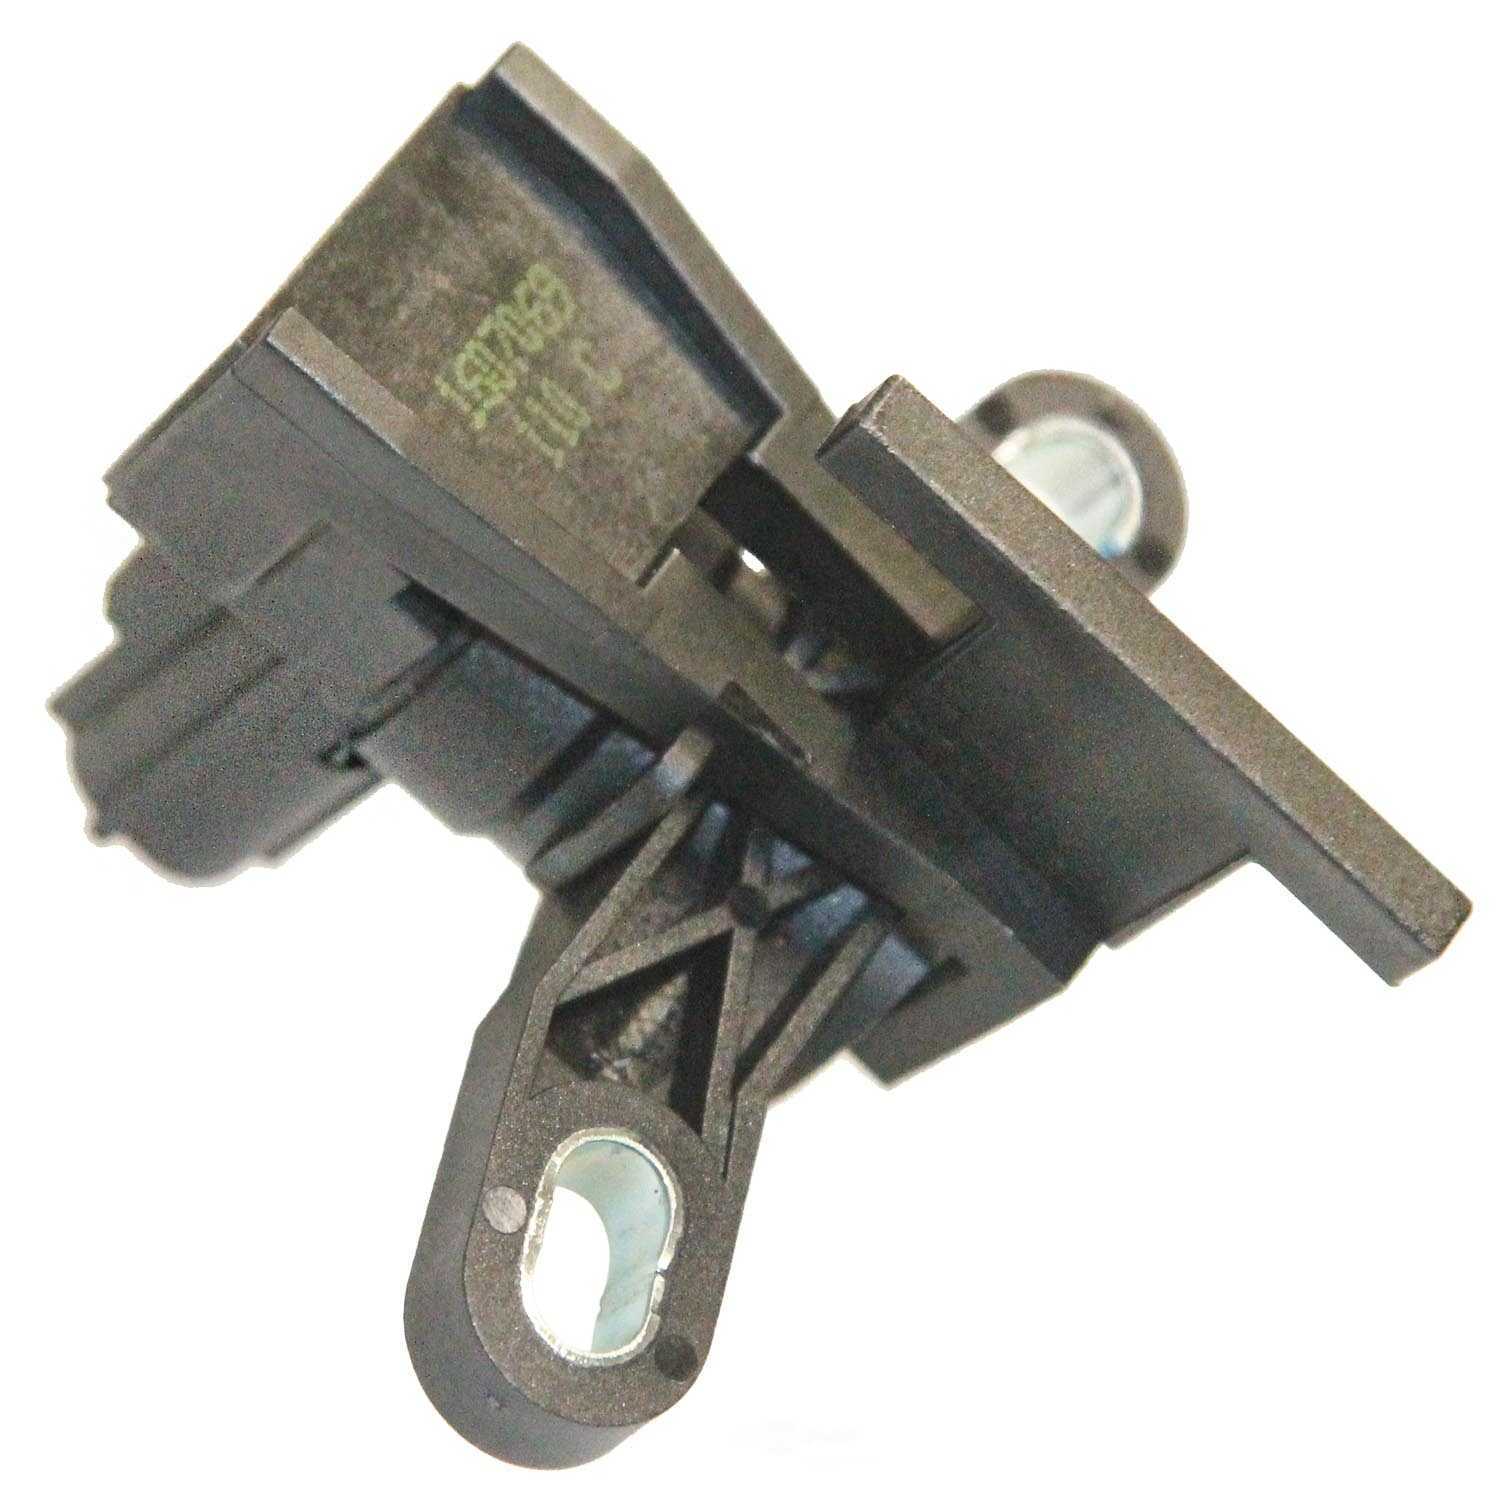 WALKER PRODUCTS INC - Engine Crankshaft Position Sensor - Sensor Only - WPI 235-1346